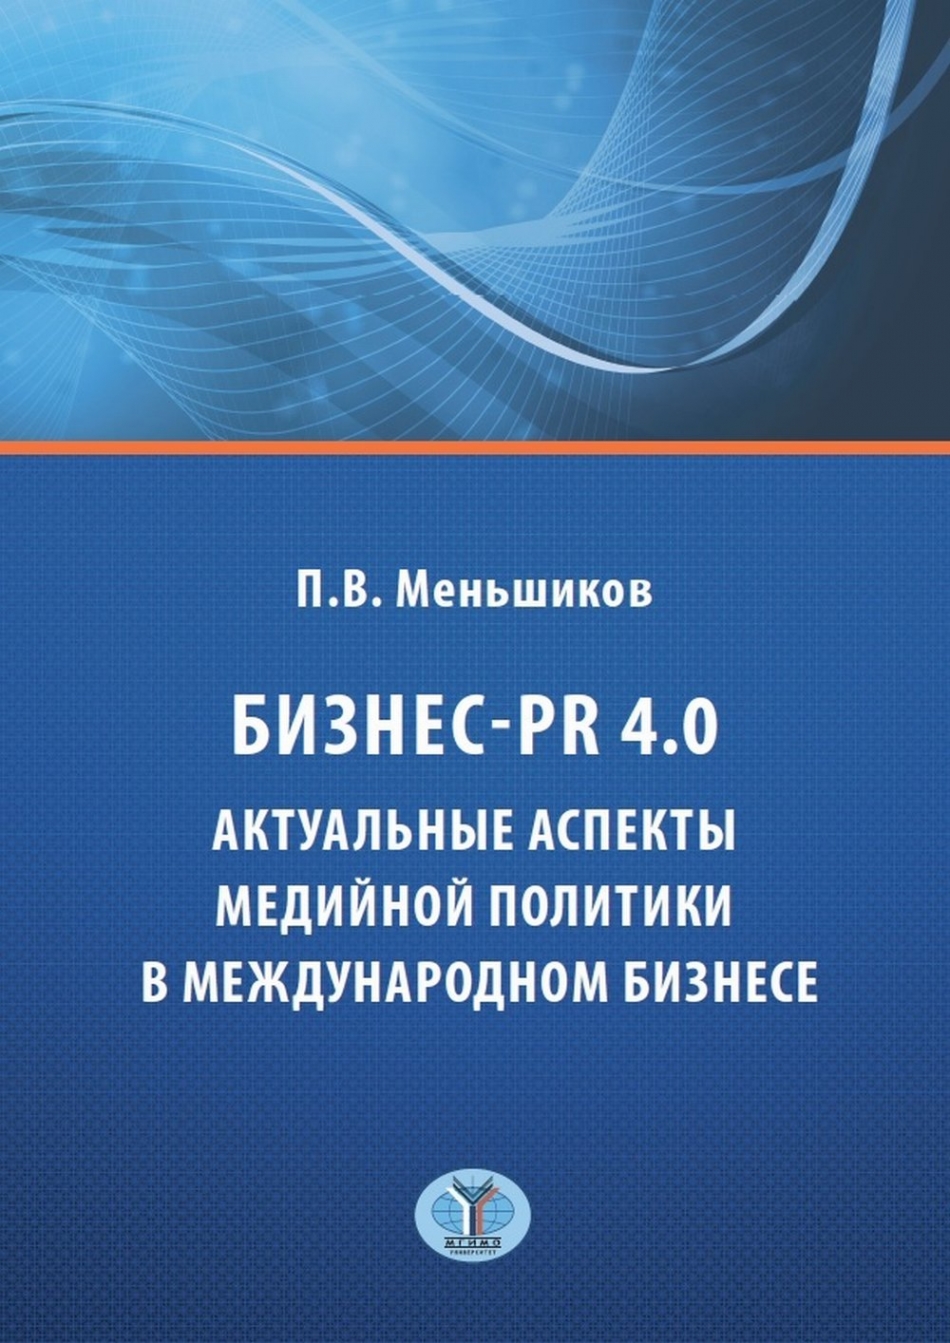 Меньшиков П.В. Бизнес - PR 4.0. Актуальные аспекты медийной политики в международном бизнесе 